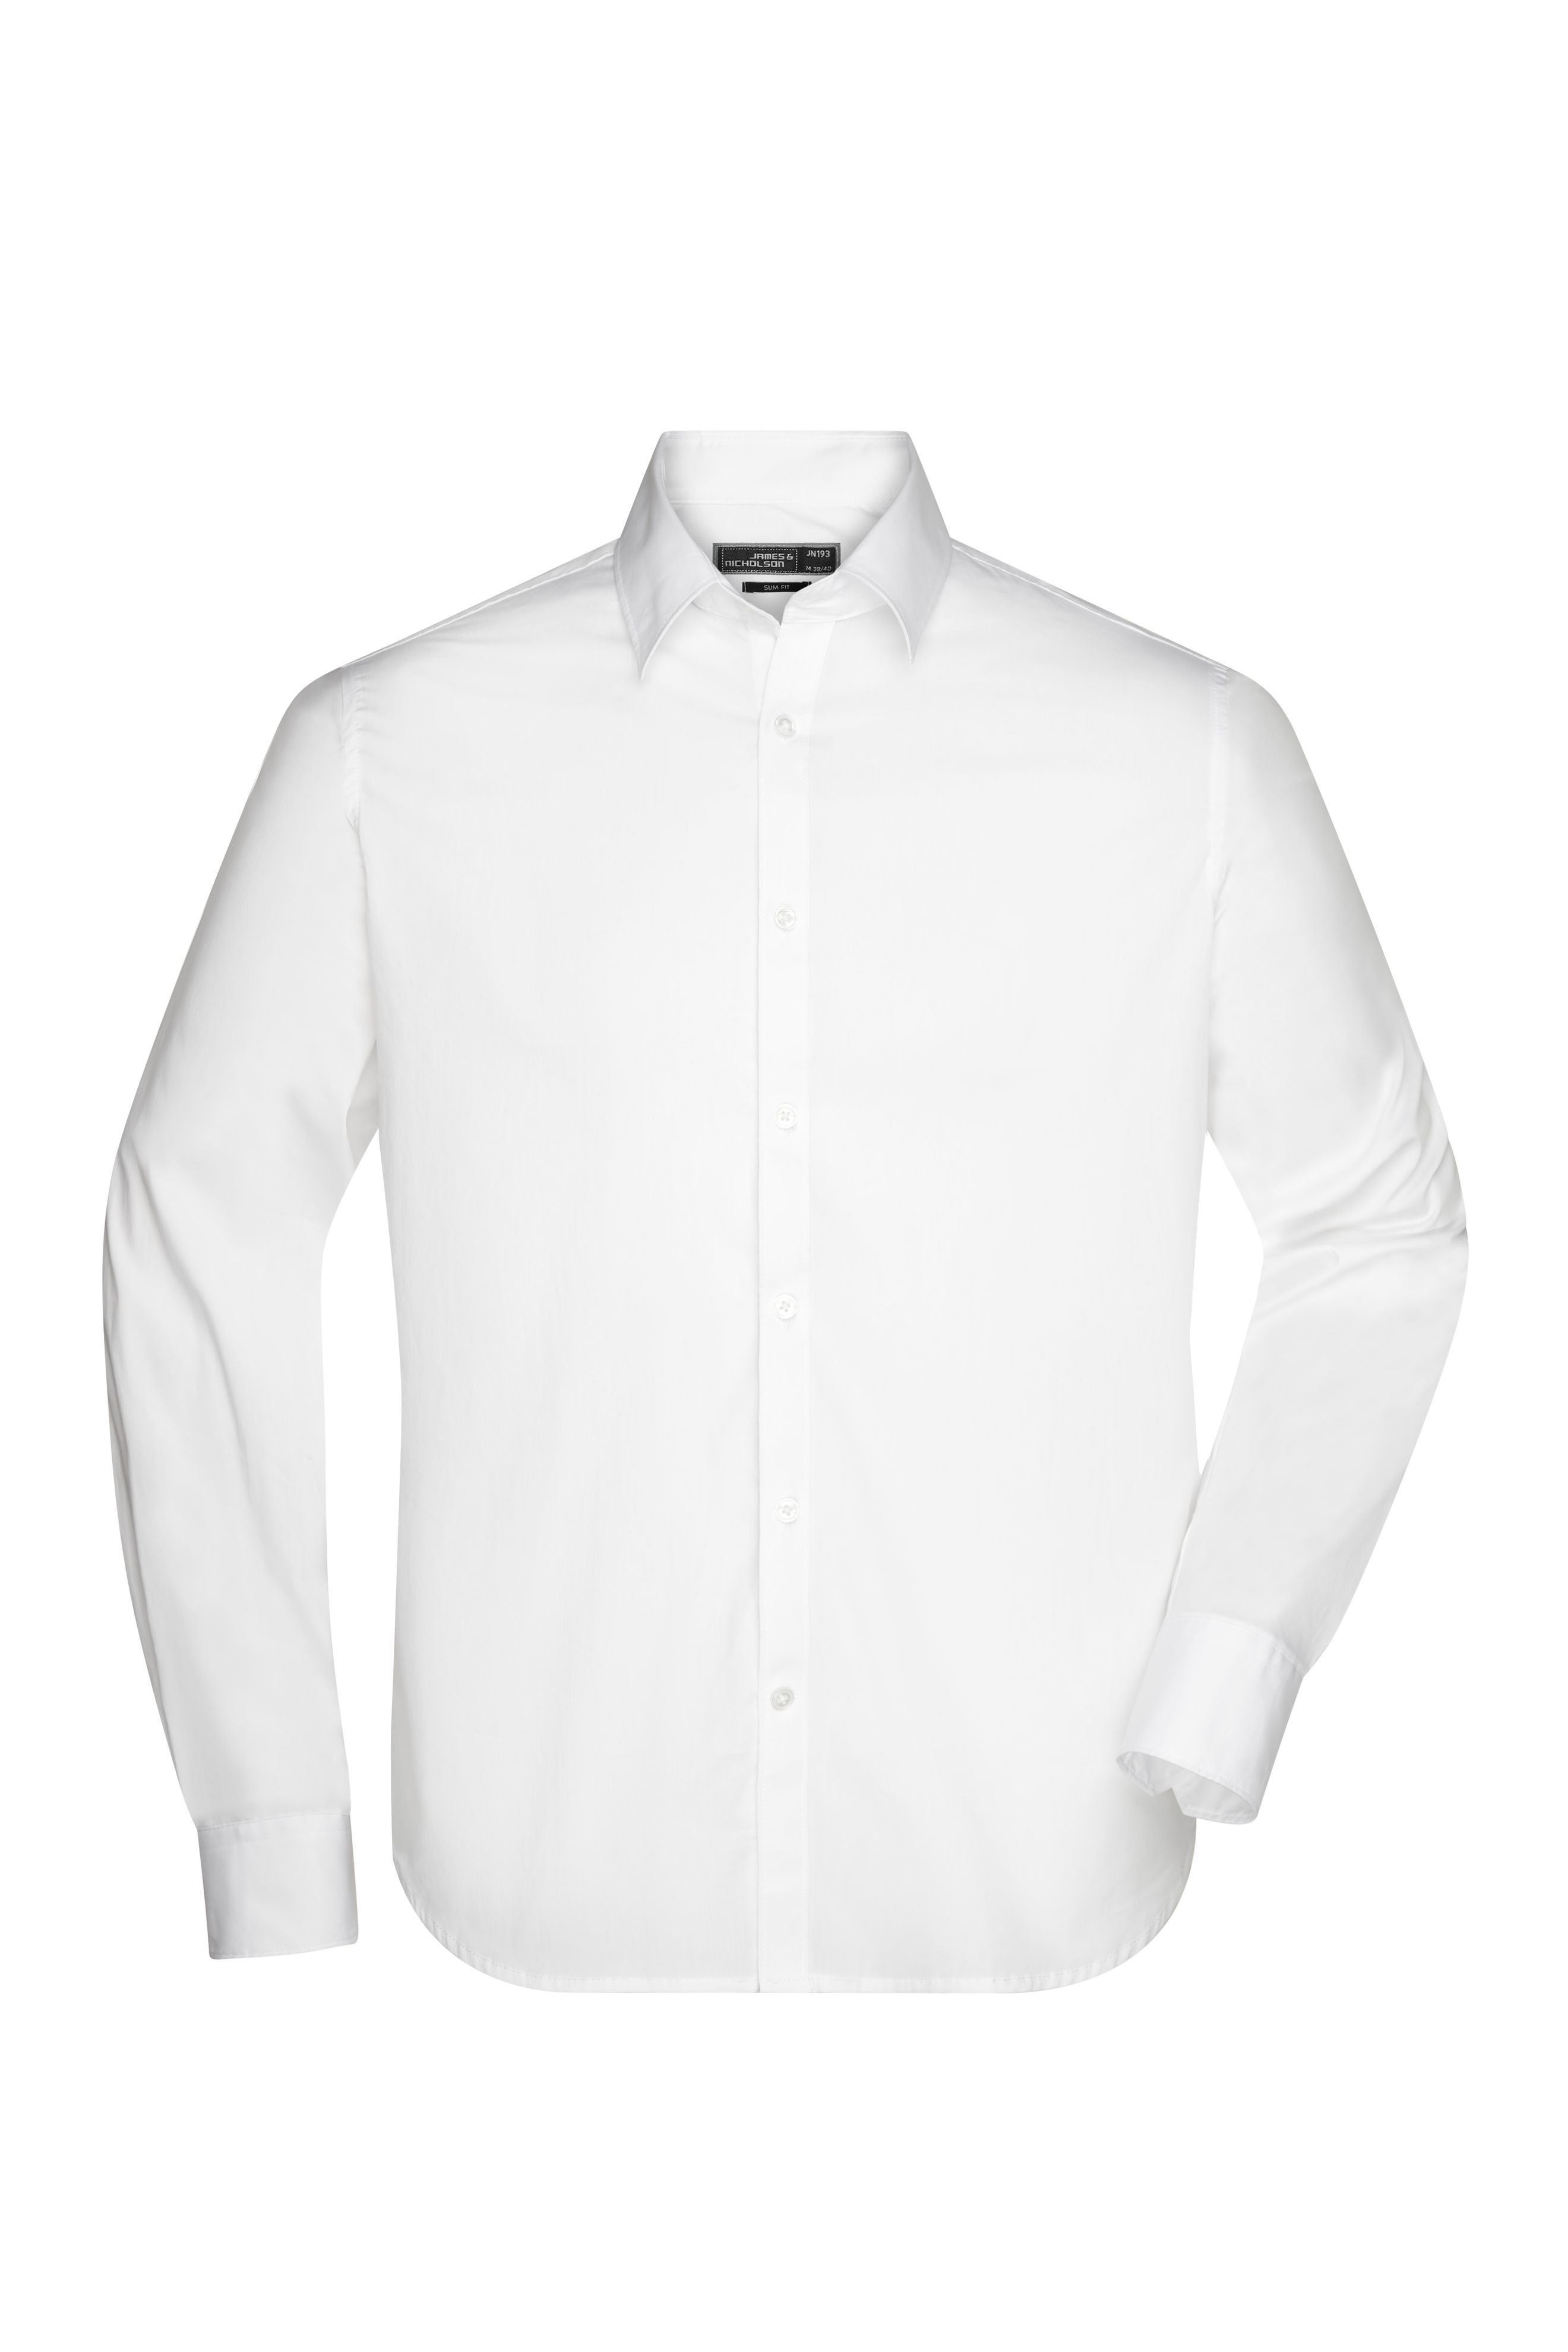 Men Men's Shirt Slim Fit Long White-Daiber